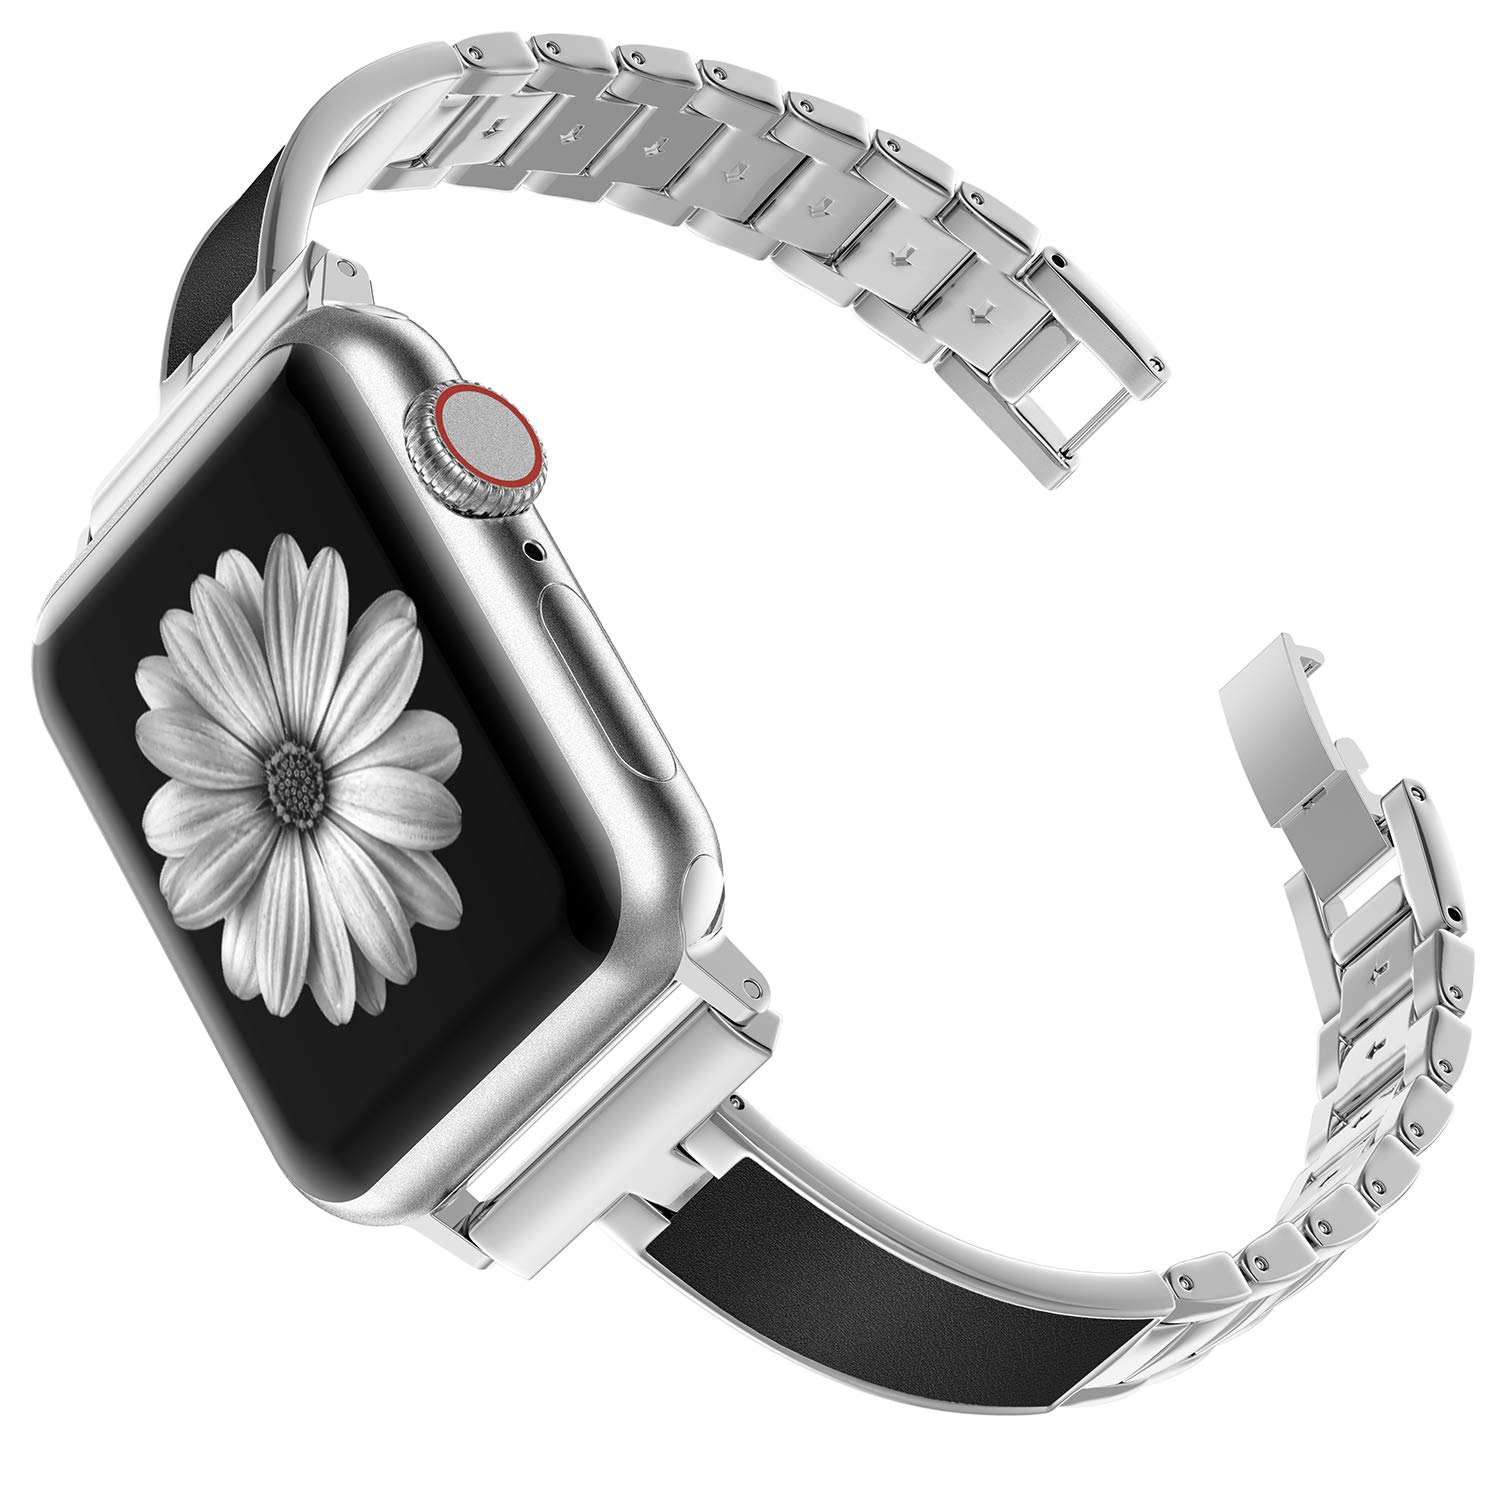 Apple Watchのオシャレな女性向けスチールバンド10選 21 最新版 スマートウォッチライフ